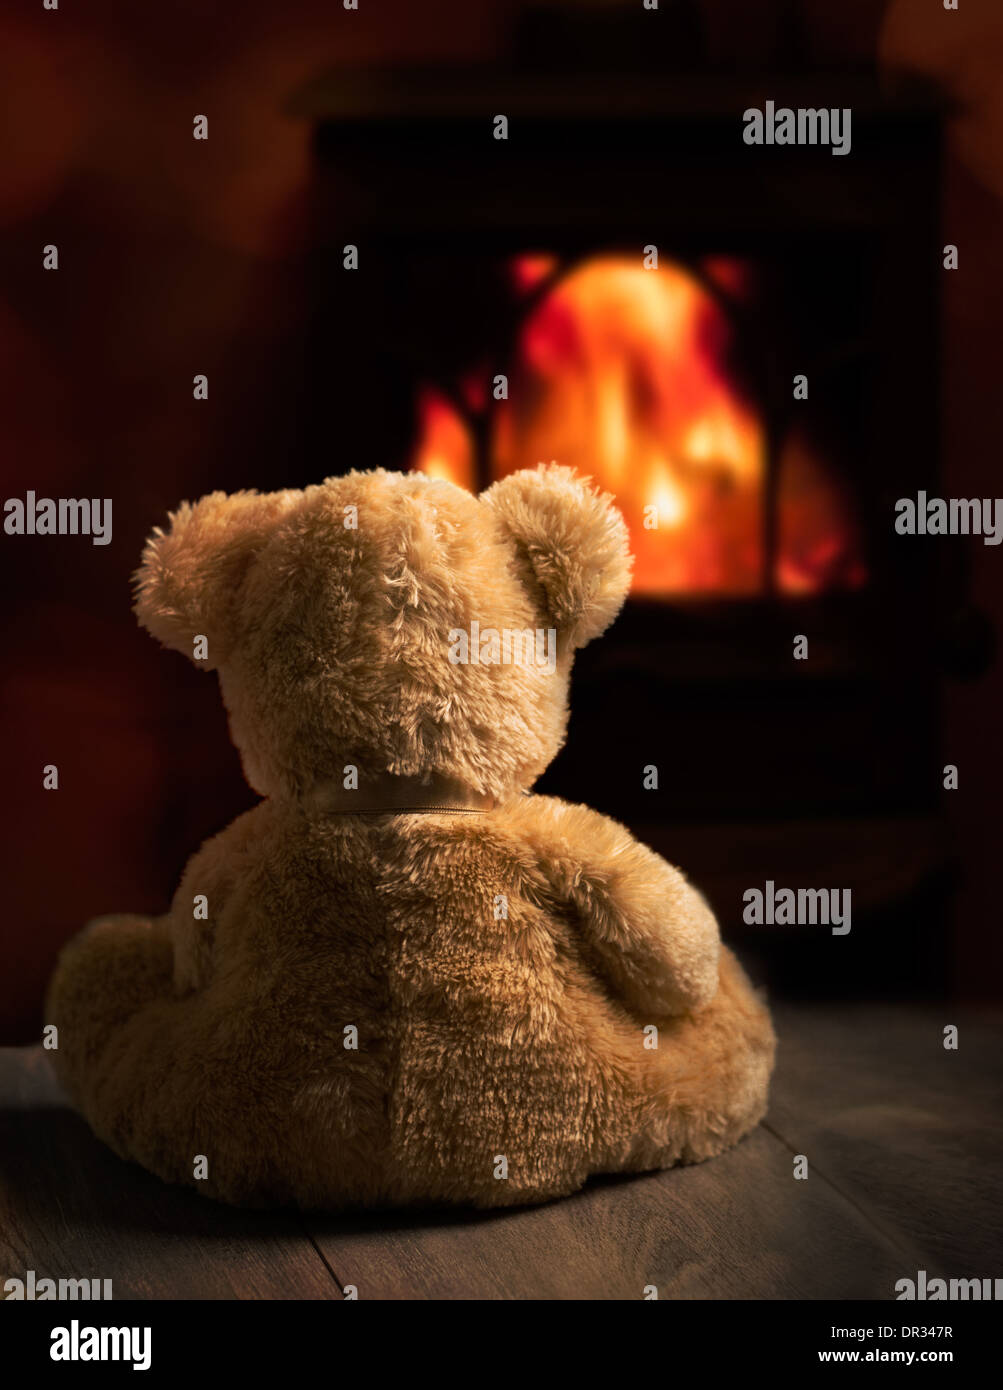 warming teddy bear